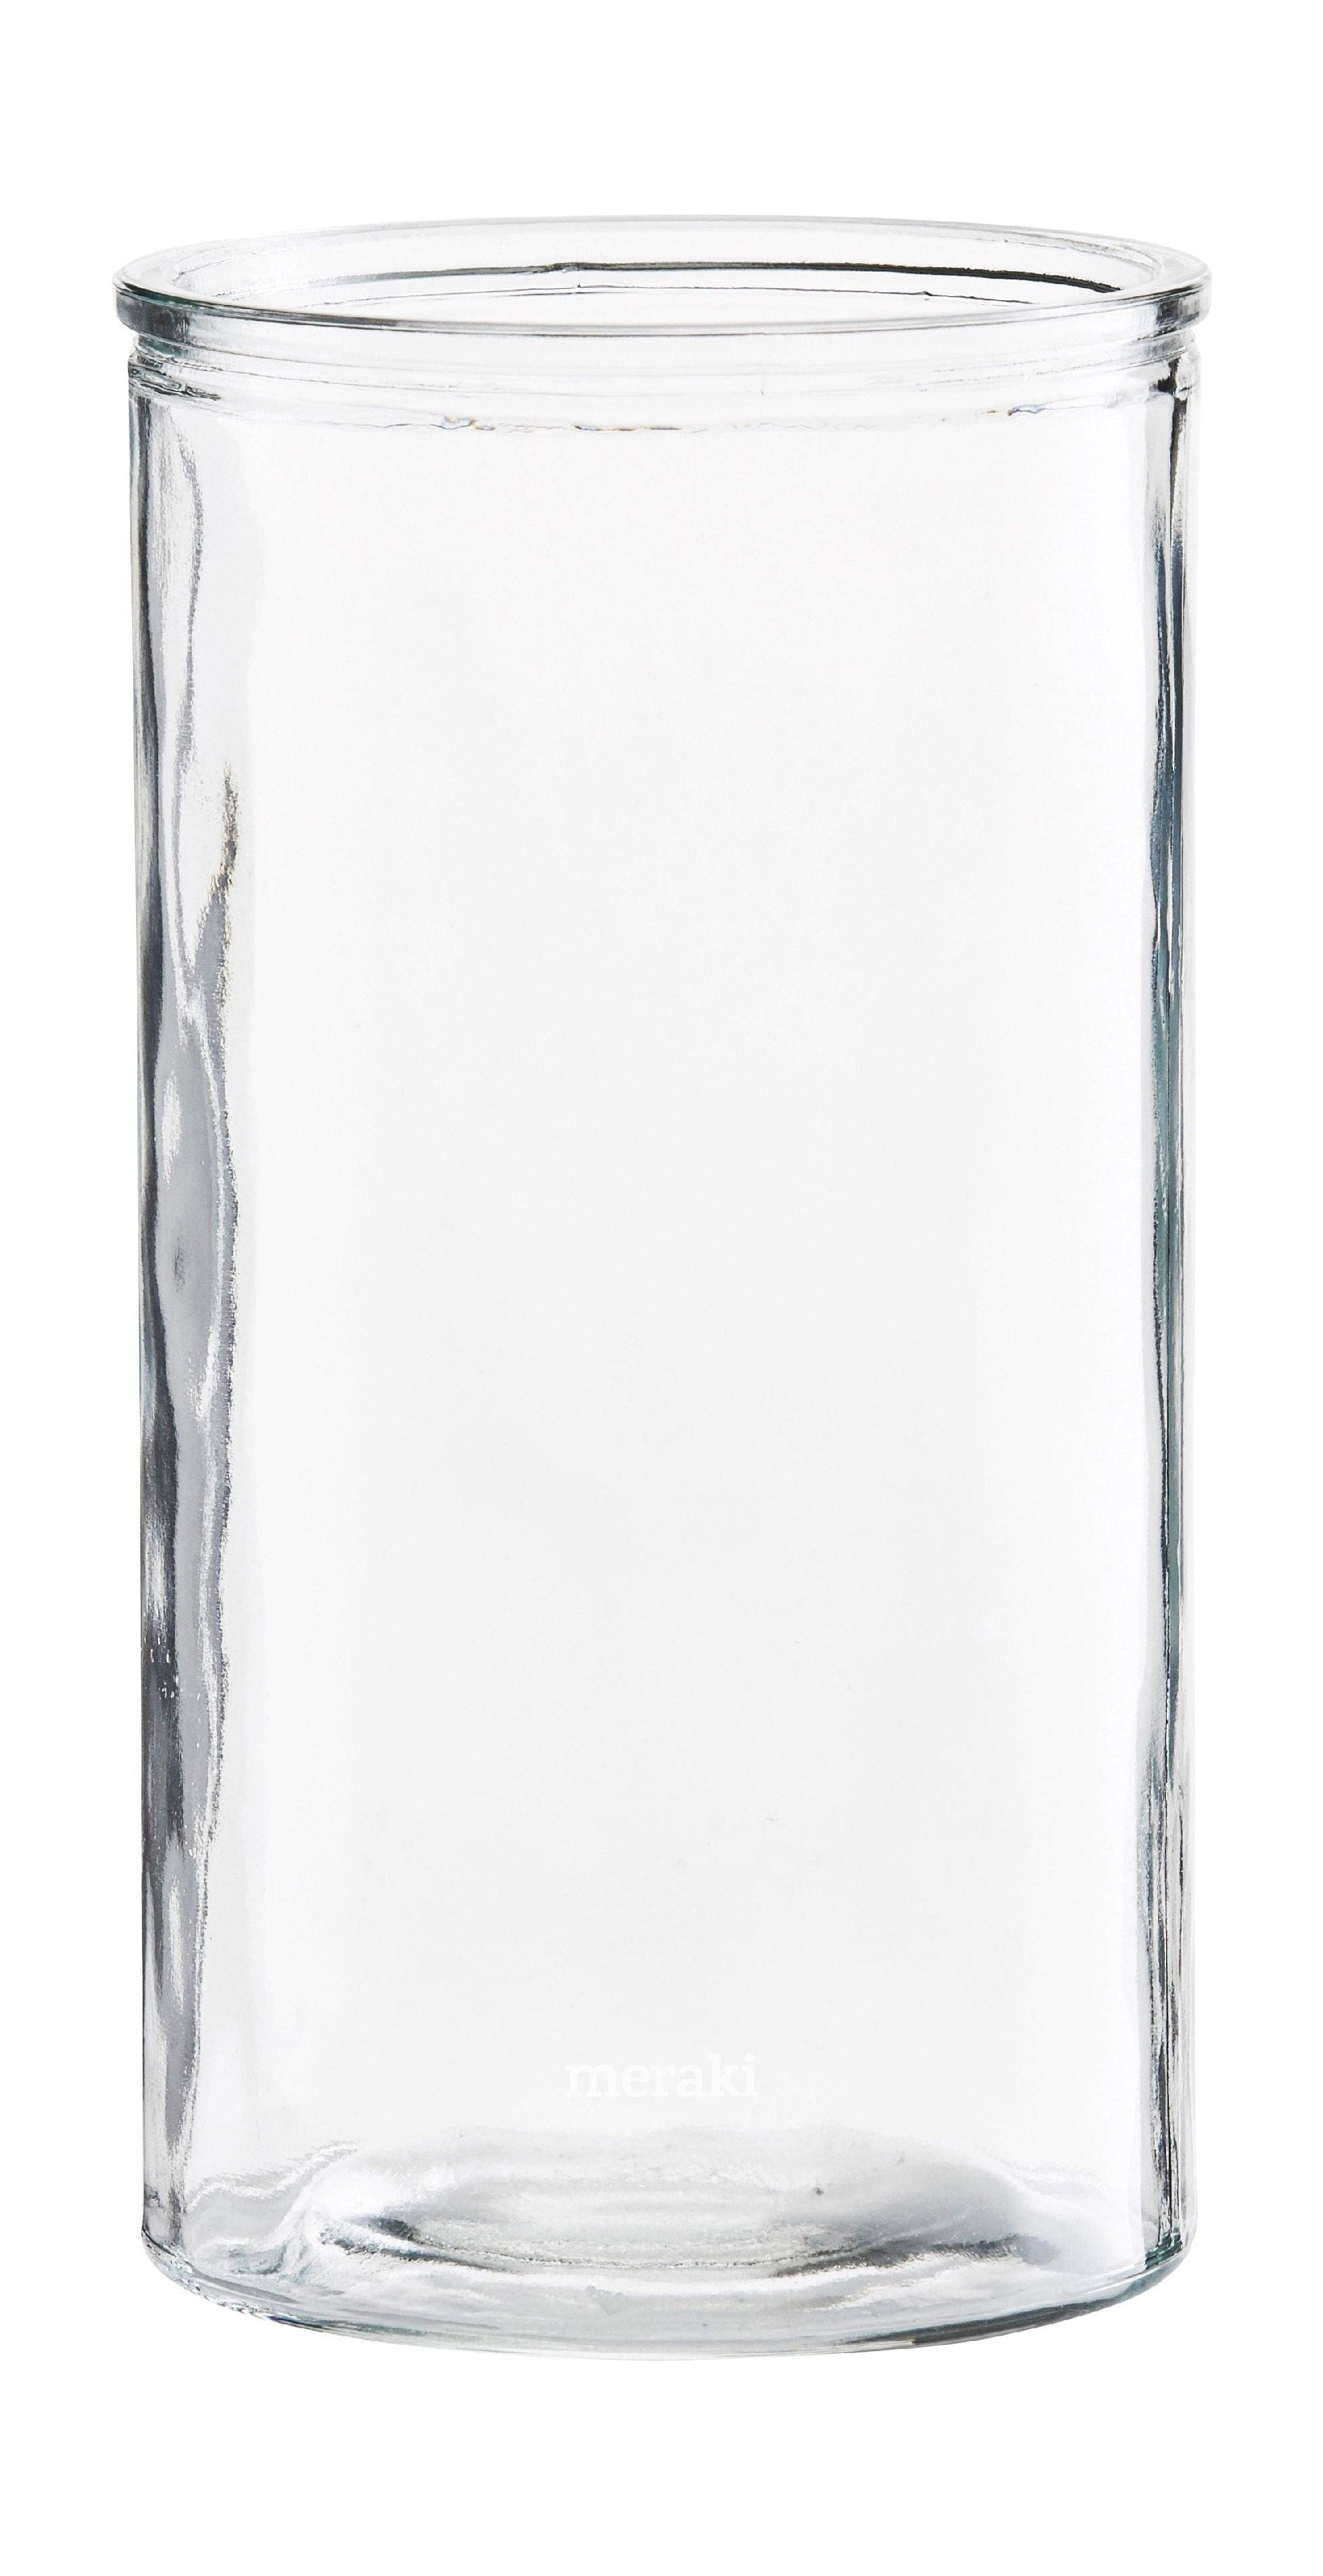 Vase de cylindre Meraki, Øx h 13x24